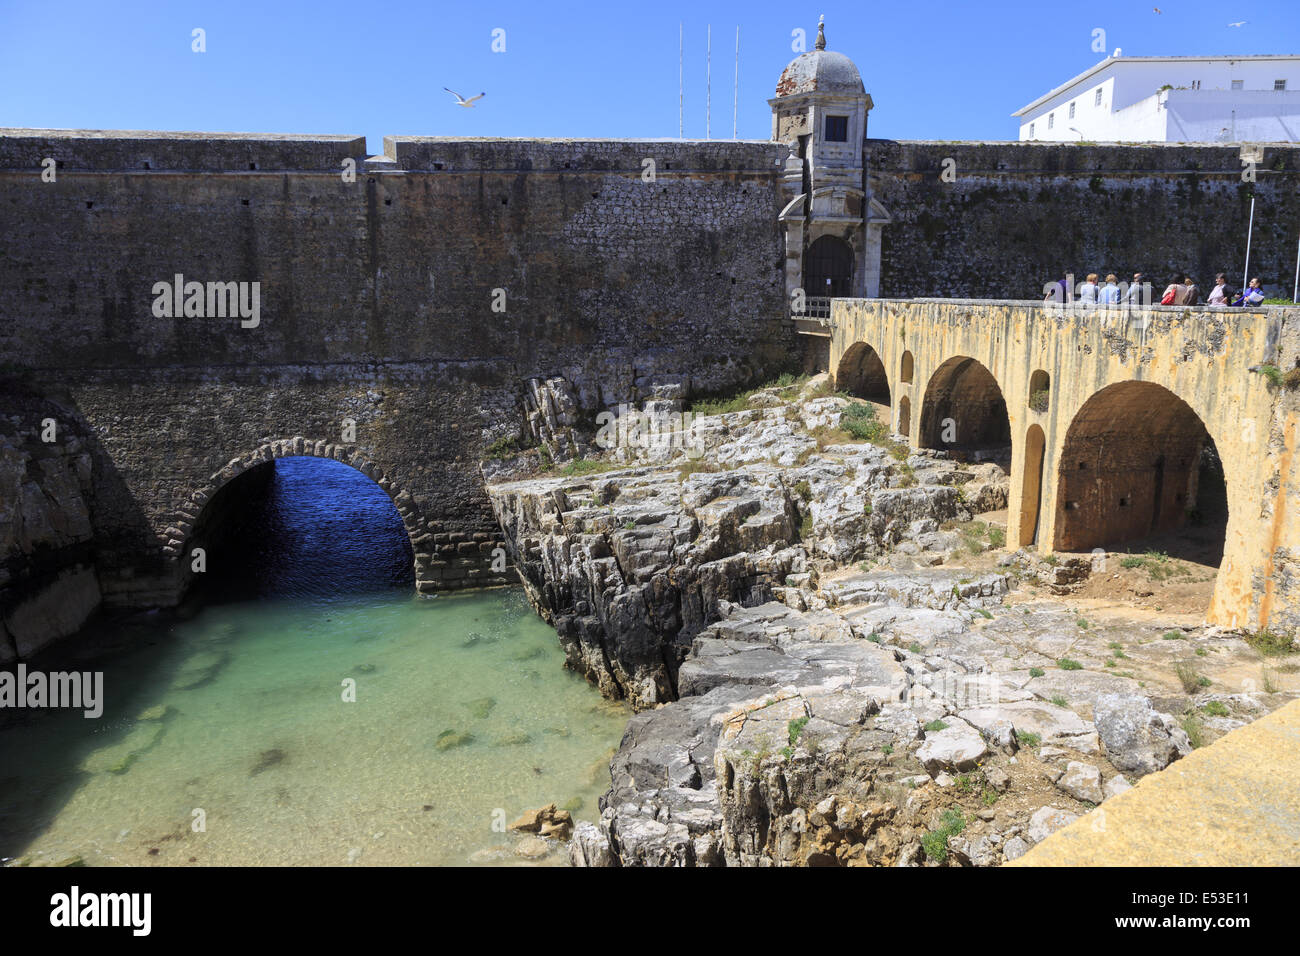 Die Festung aus dem 17. Jahrhundert Peniche Portugal. Eine militärische Festung aus dem Mittelalter im 19. und 20. Jahrhunderts benutzt hat, ein Gefängnis. Stockfoto